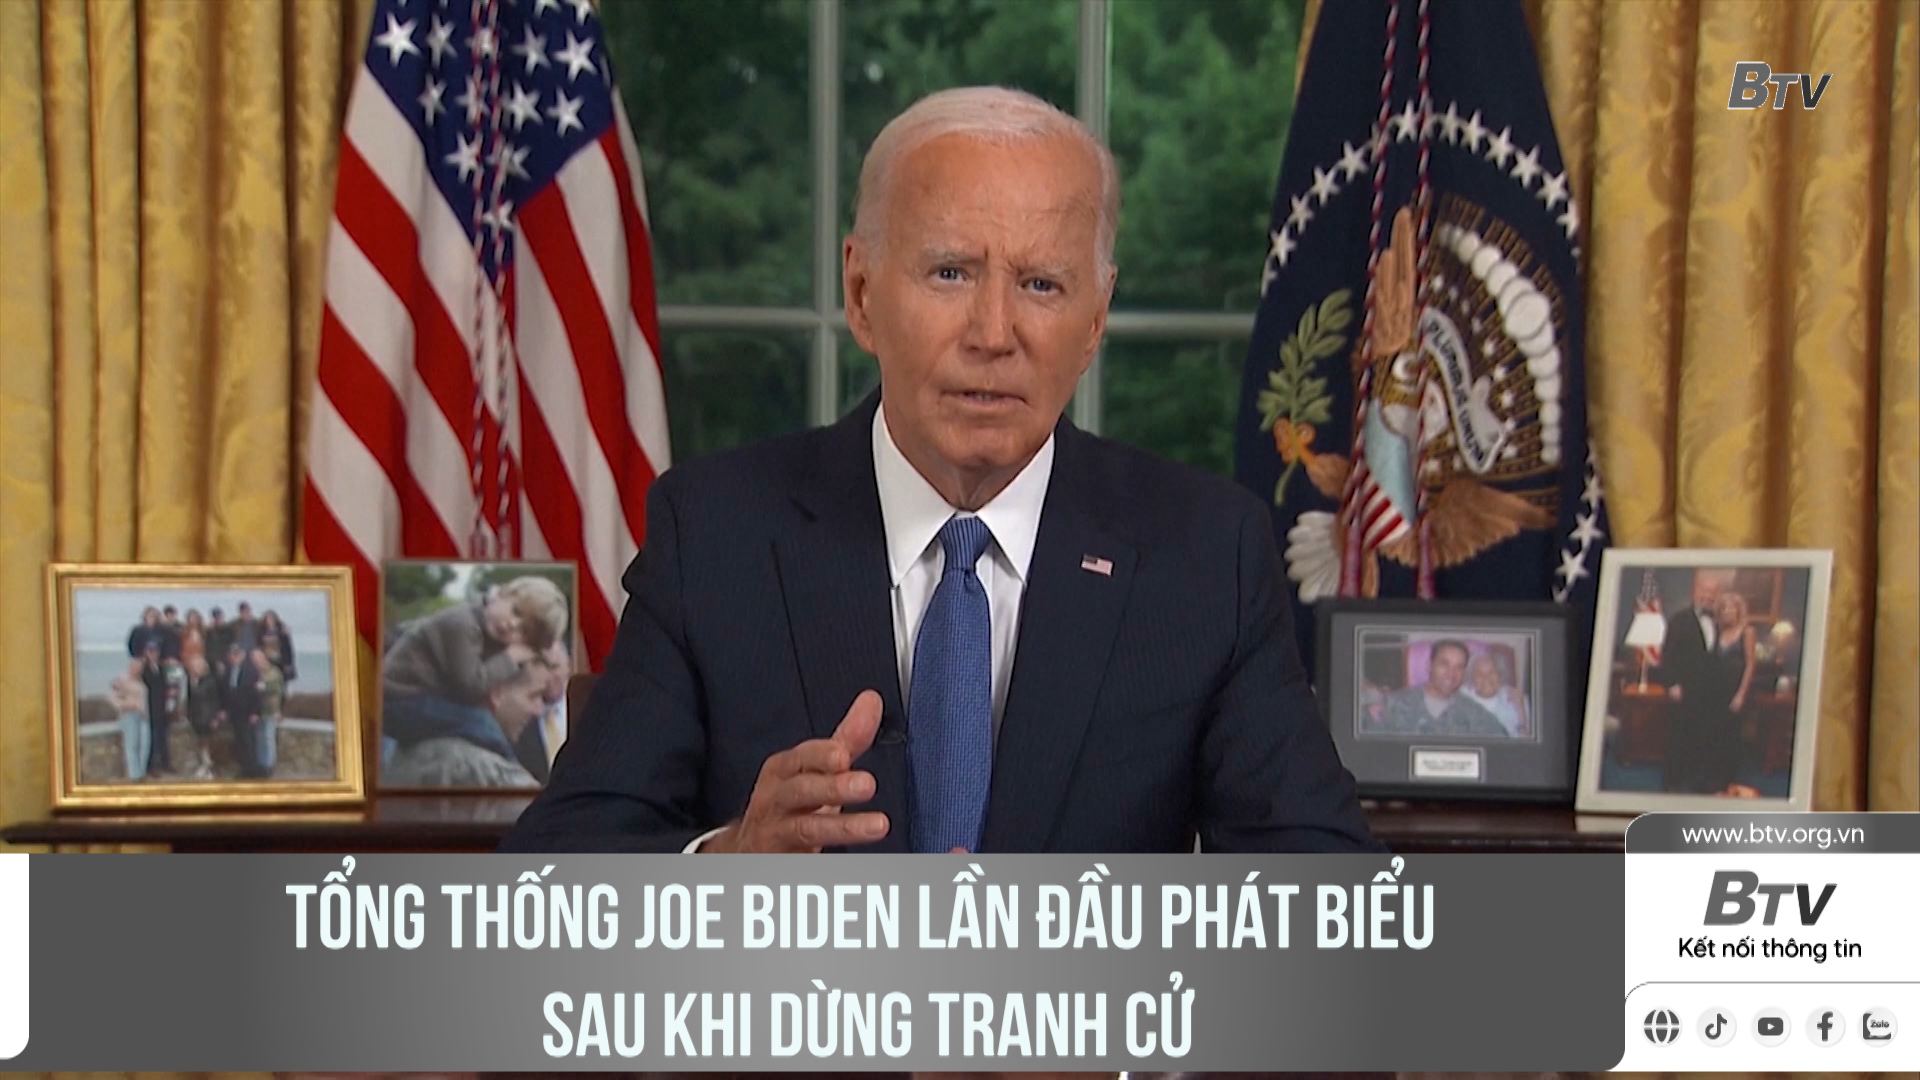 Tổng thống Joe Biden lần đầu phát biểu sau khi dừng tranh cử	